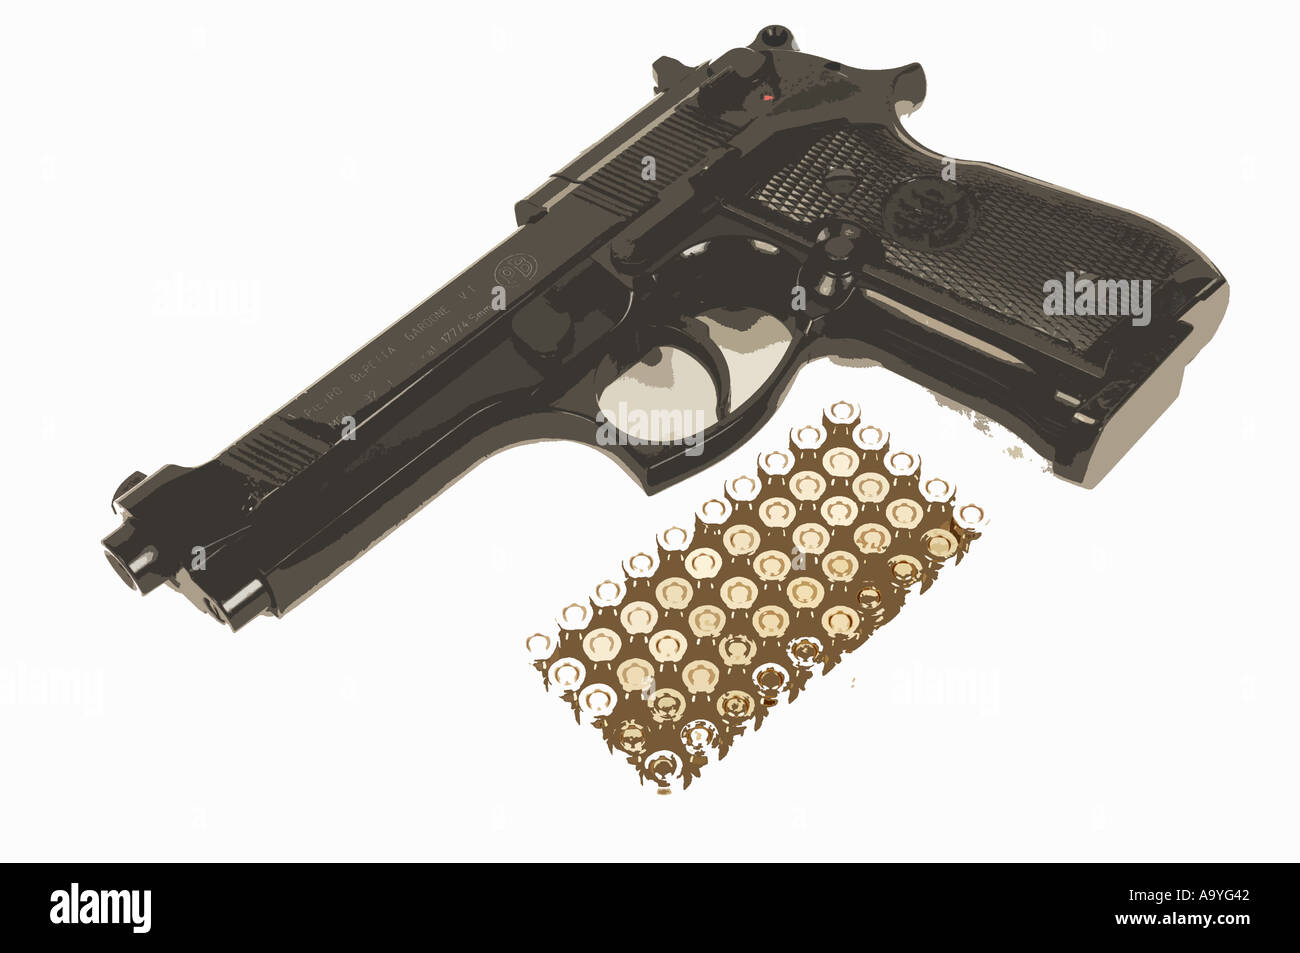 Illustrazione di una pistola beretta con proiettili munizioni Foto Stock